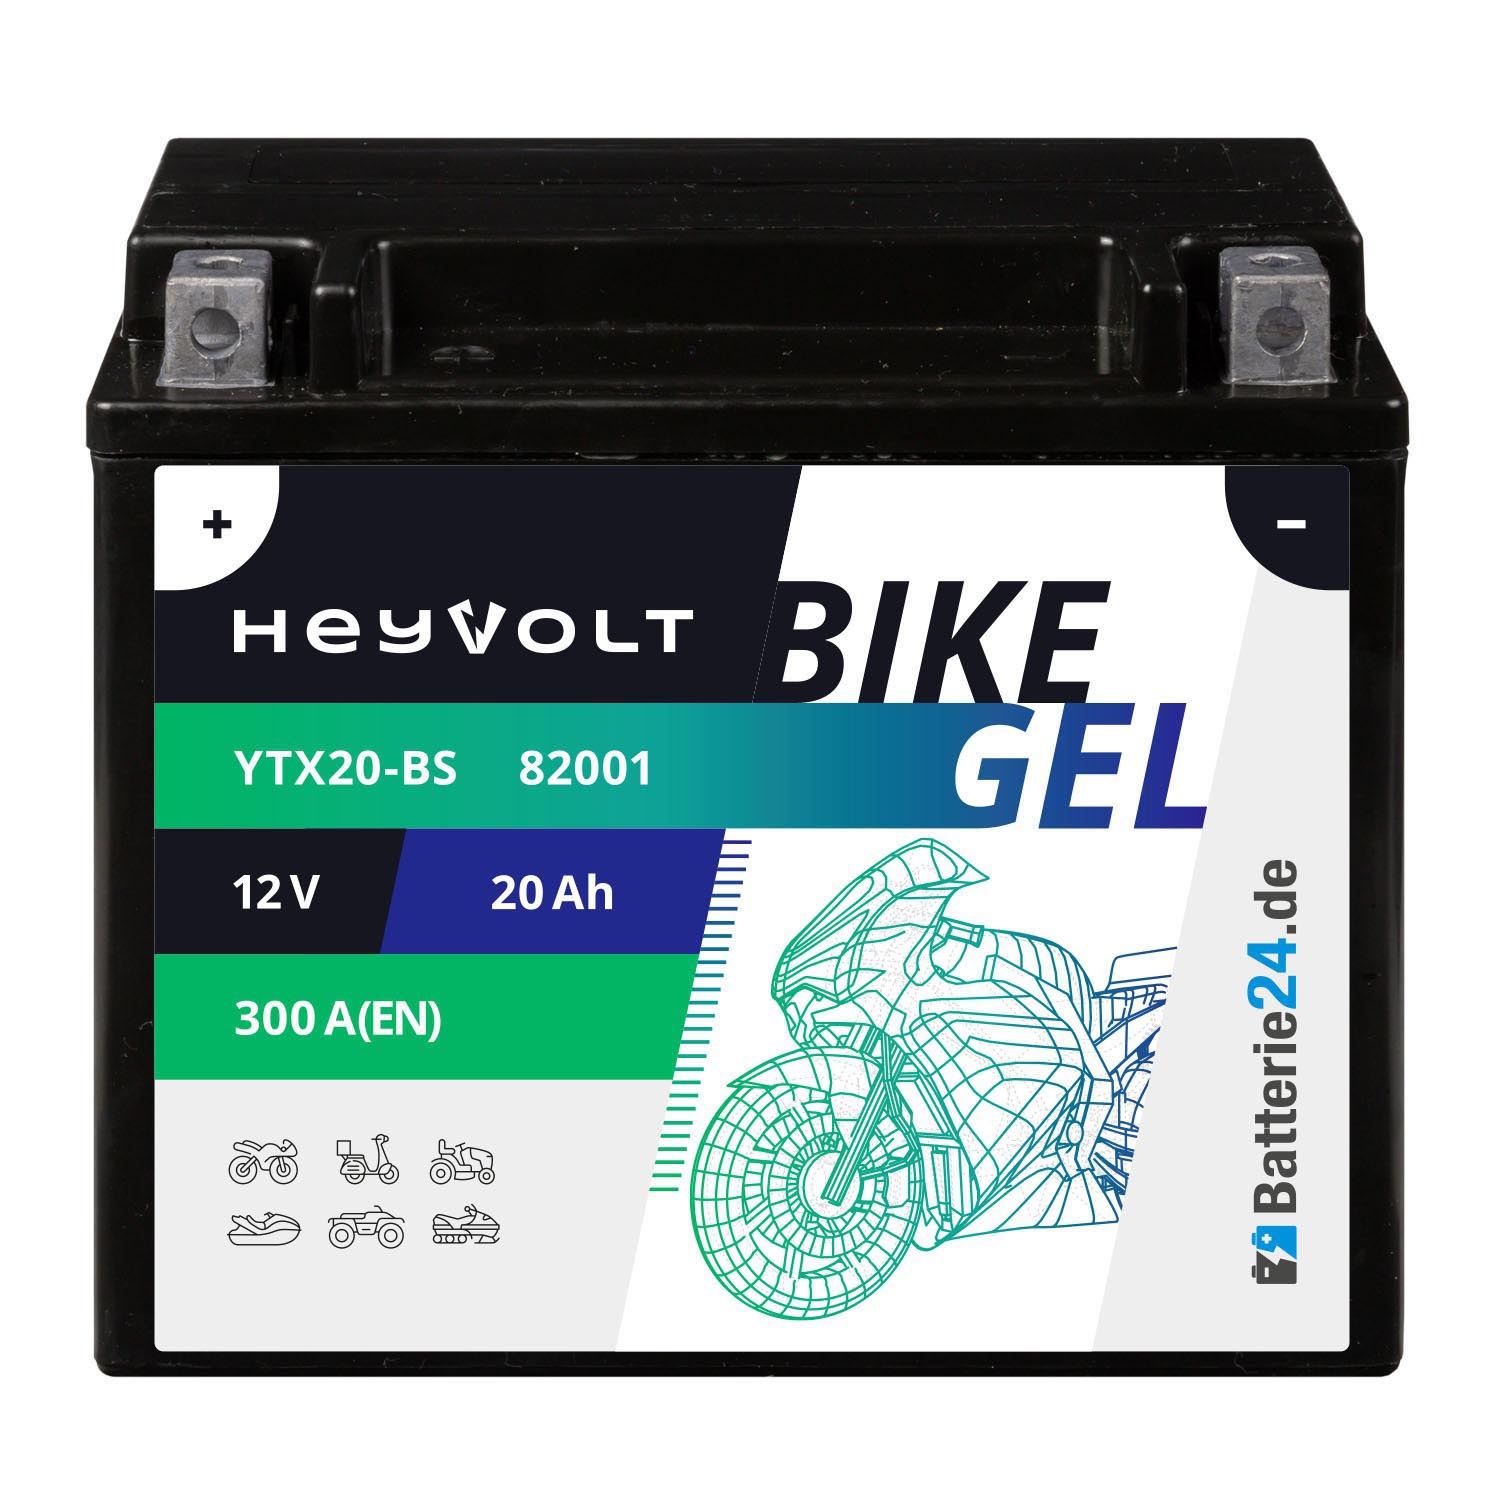 HeyVolt BIKE GEL Motorradbatterie YTX20-BS 82001 12V 20Ah